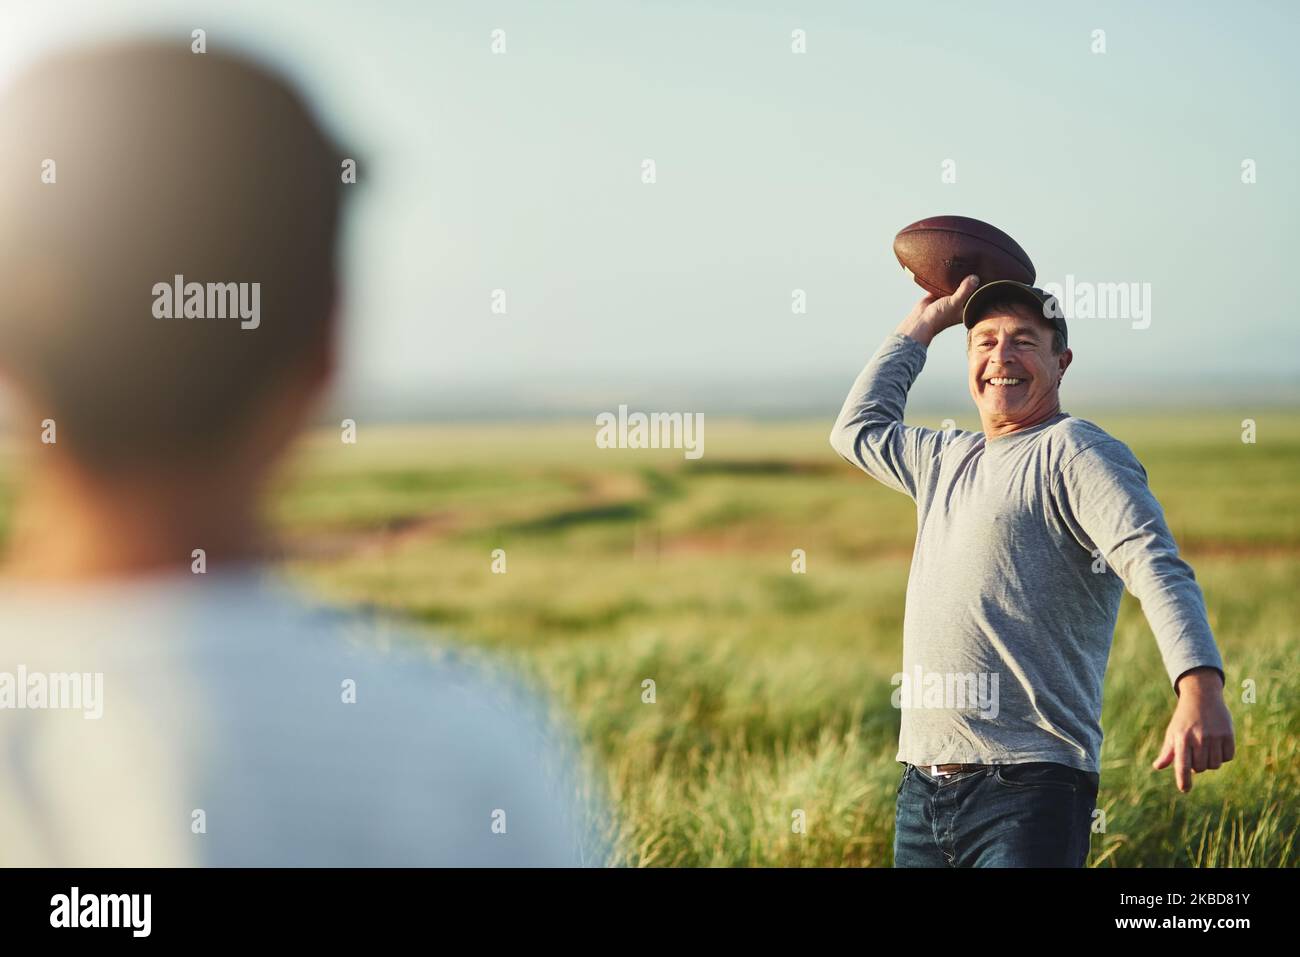 Machen Sie sich bereit, es kommt Ihren Weg. Vater wirft einen Fußball zu seinem Sohn auf einem Feld. Stockfoto